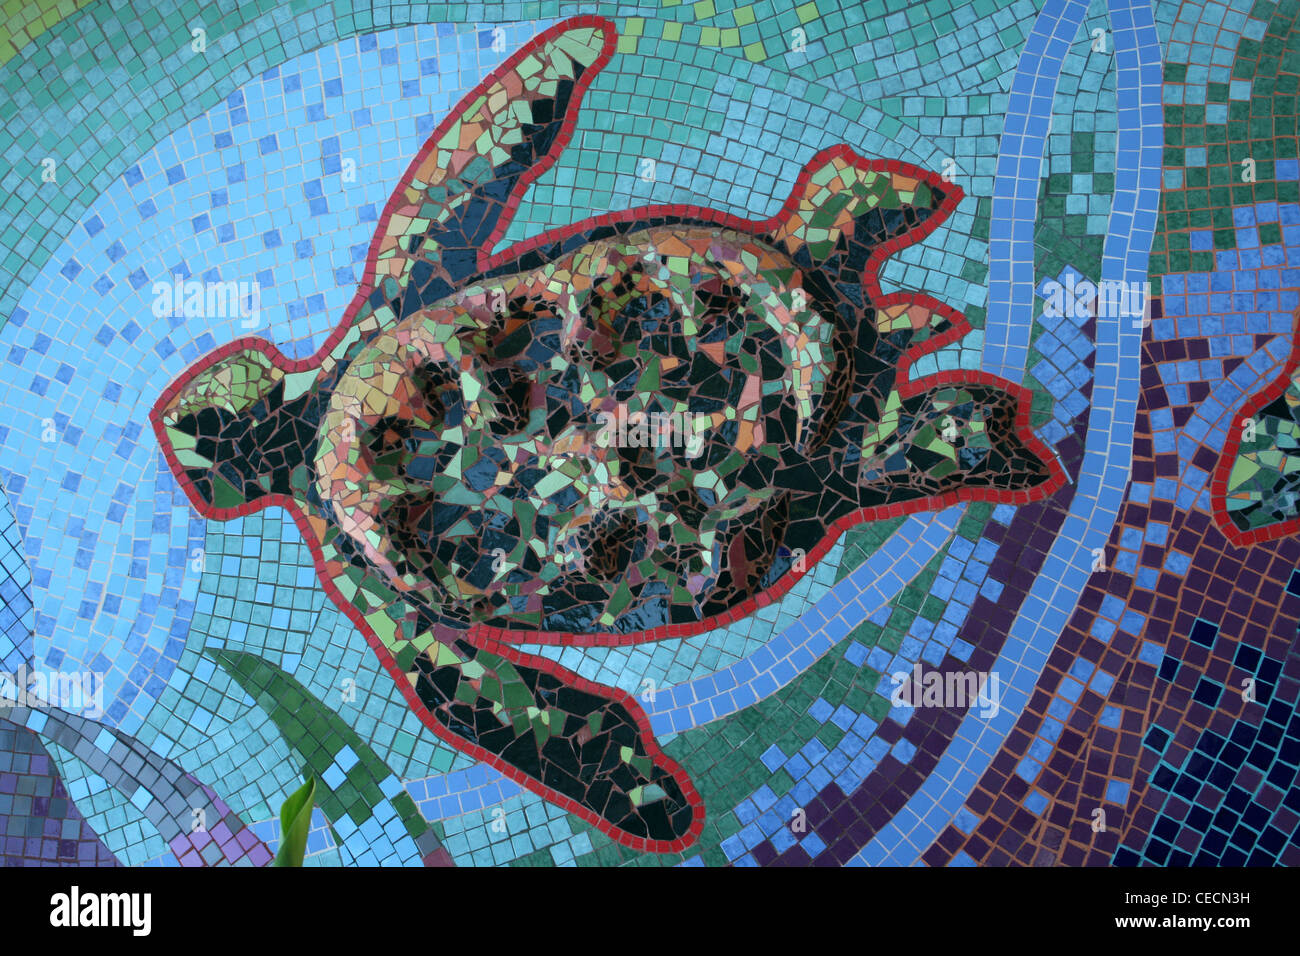 Mosaik Wandbild im Dorf Tortuguero Schildkröten - übersetzt als "Land der Schildkröten", Costa Rica Stockfoto